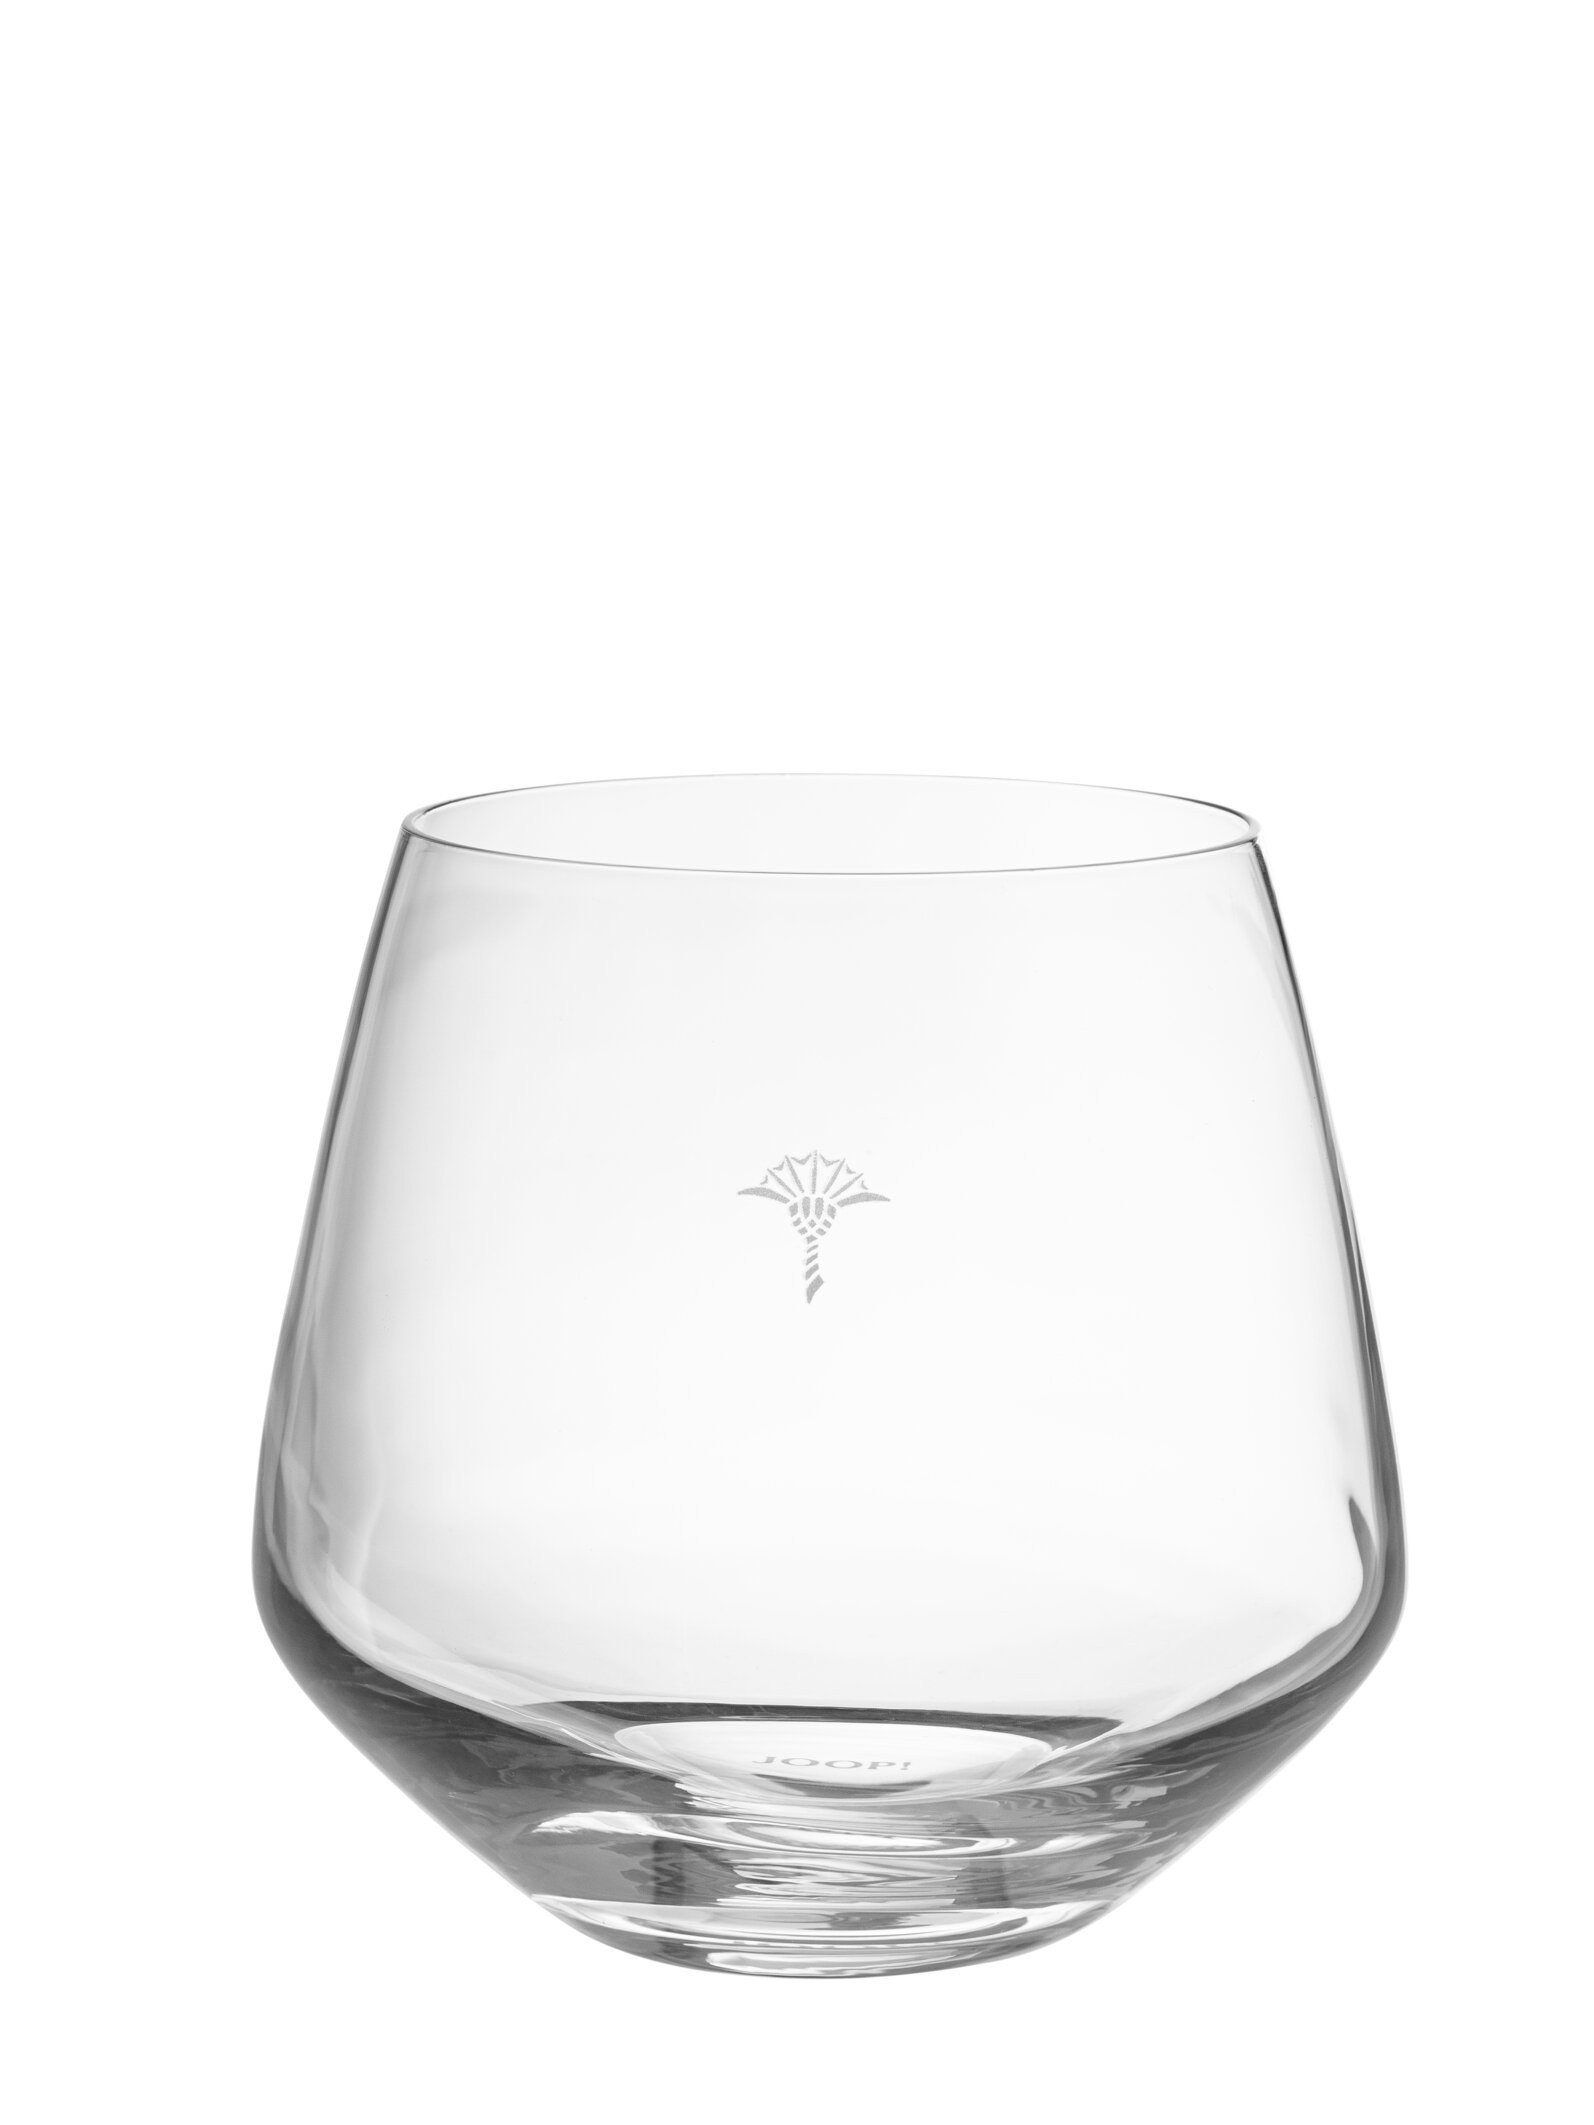 Glas JOOP! hochwertigem Wasserglas SINGLE gefertigt - LIVING CORNFLOWER Joop! Set, Kristallglas 2er Glas, Aus